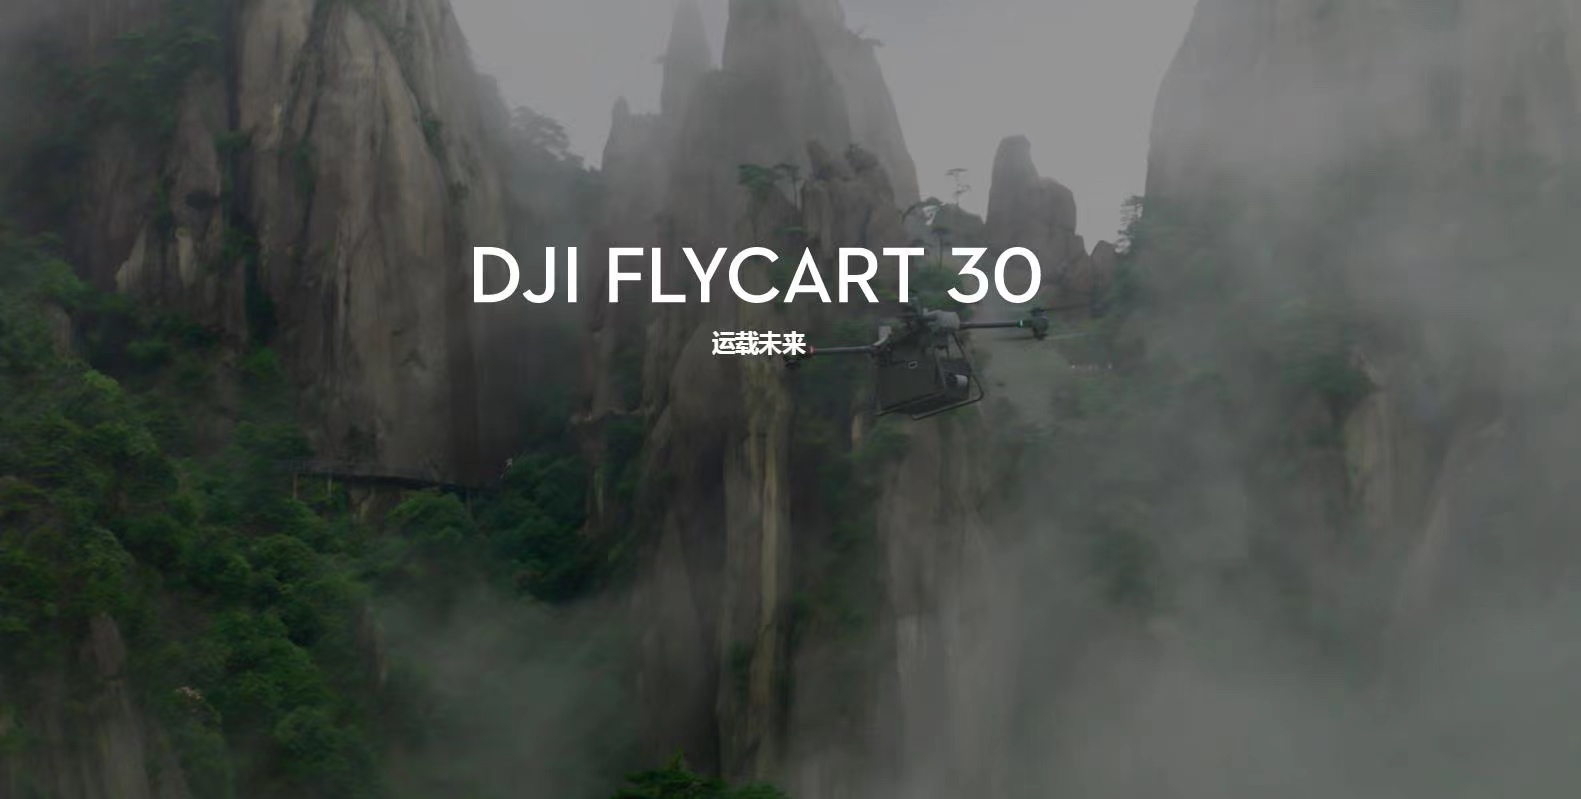 DJI FLYCART 30